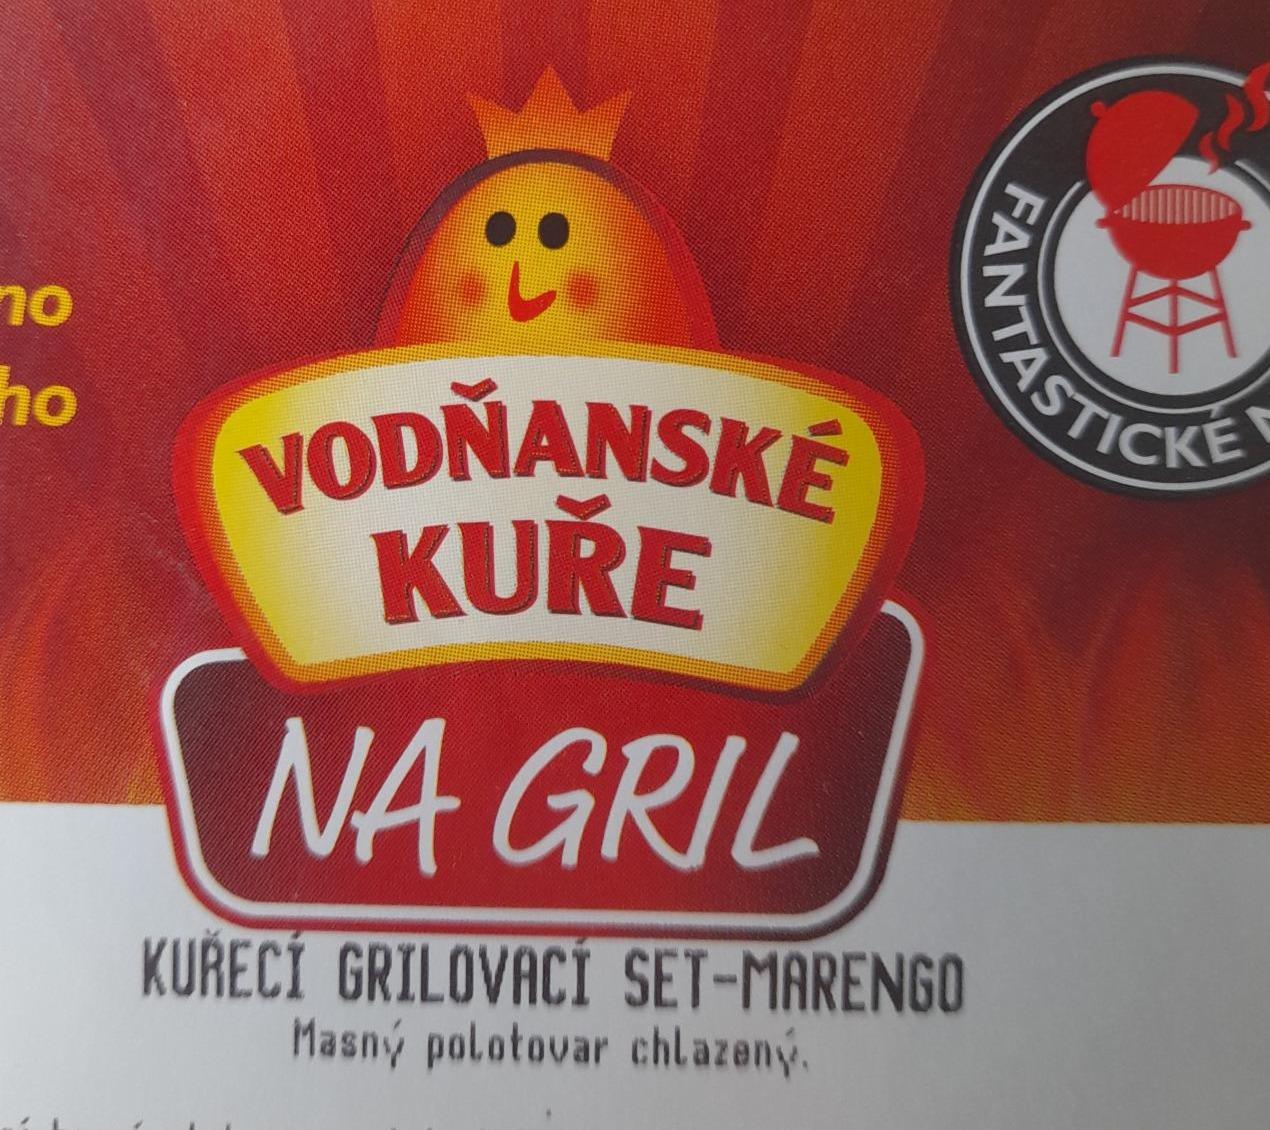 Fotografie - Kuřecí grilovací set marengo Vodňanské kuře